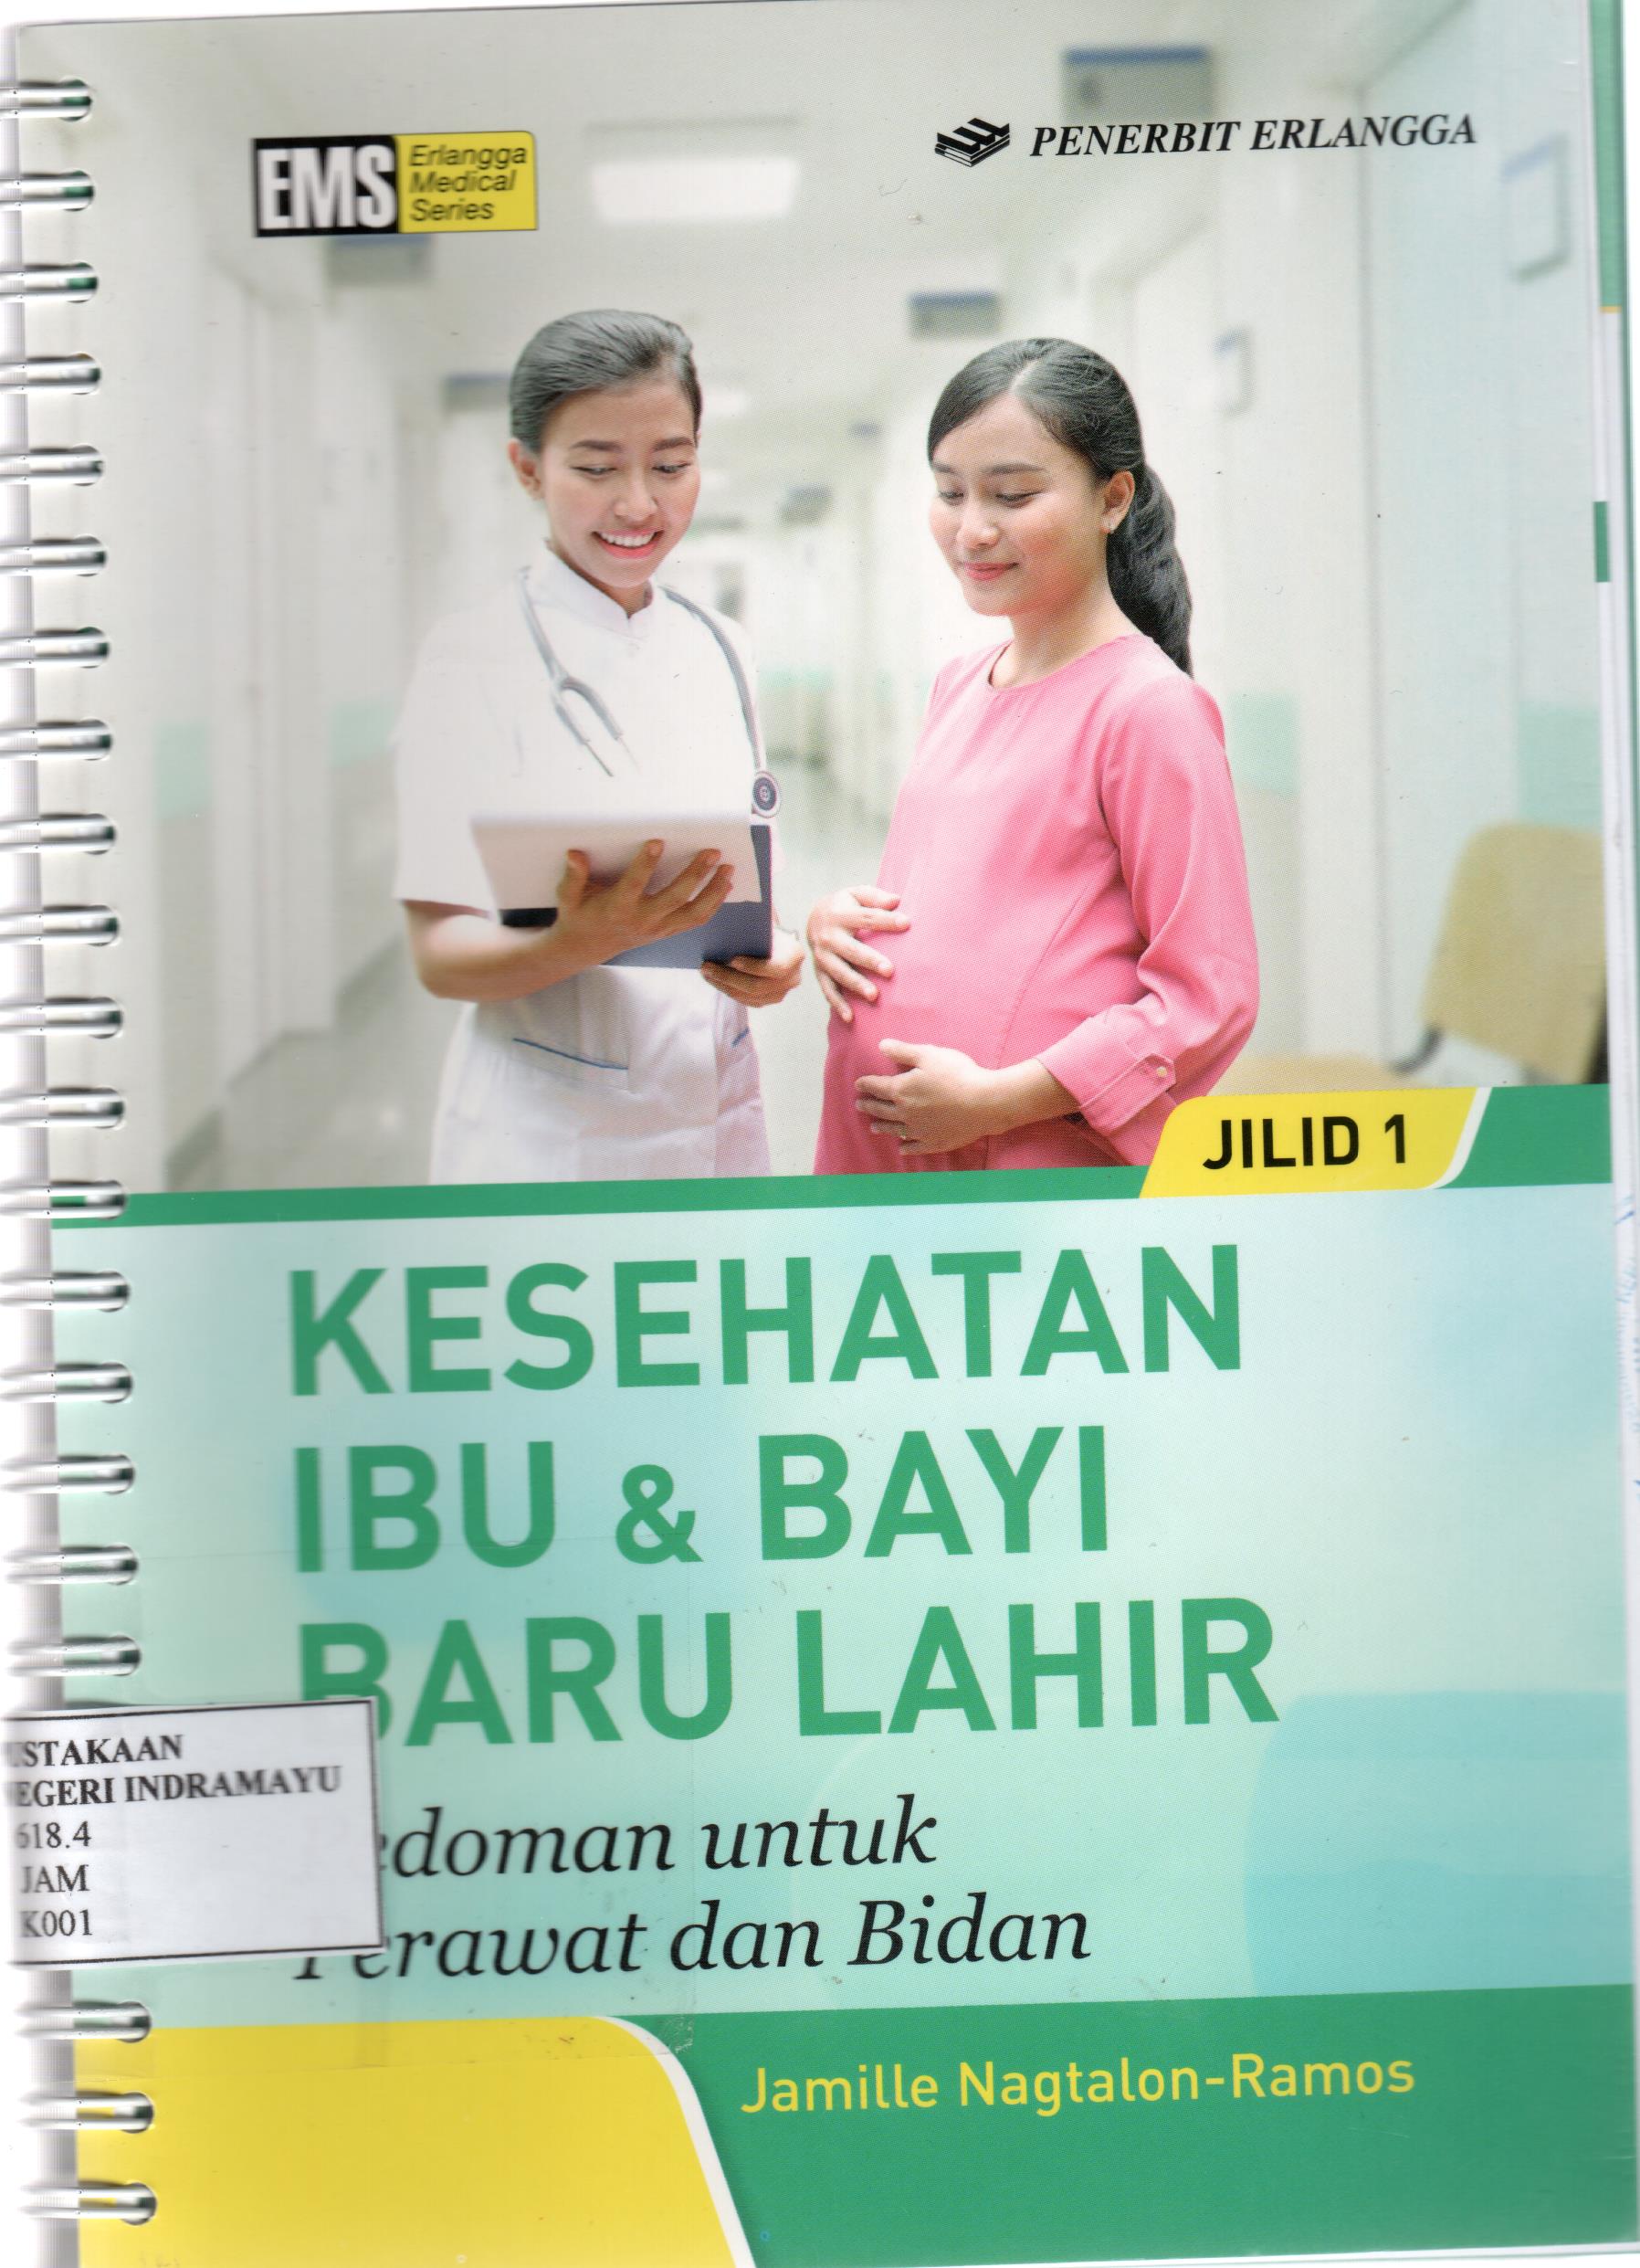 Image of Kesehatan Ibu & Bayi Baru Lahir : Pedoman untuk Perawat dan Bidan Jilid 1